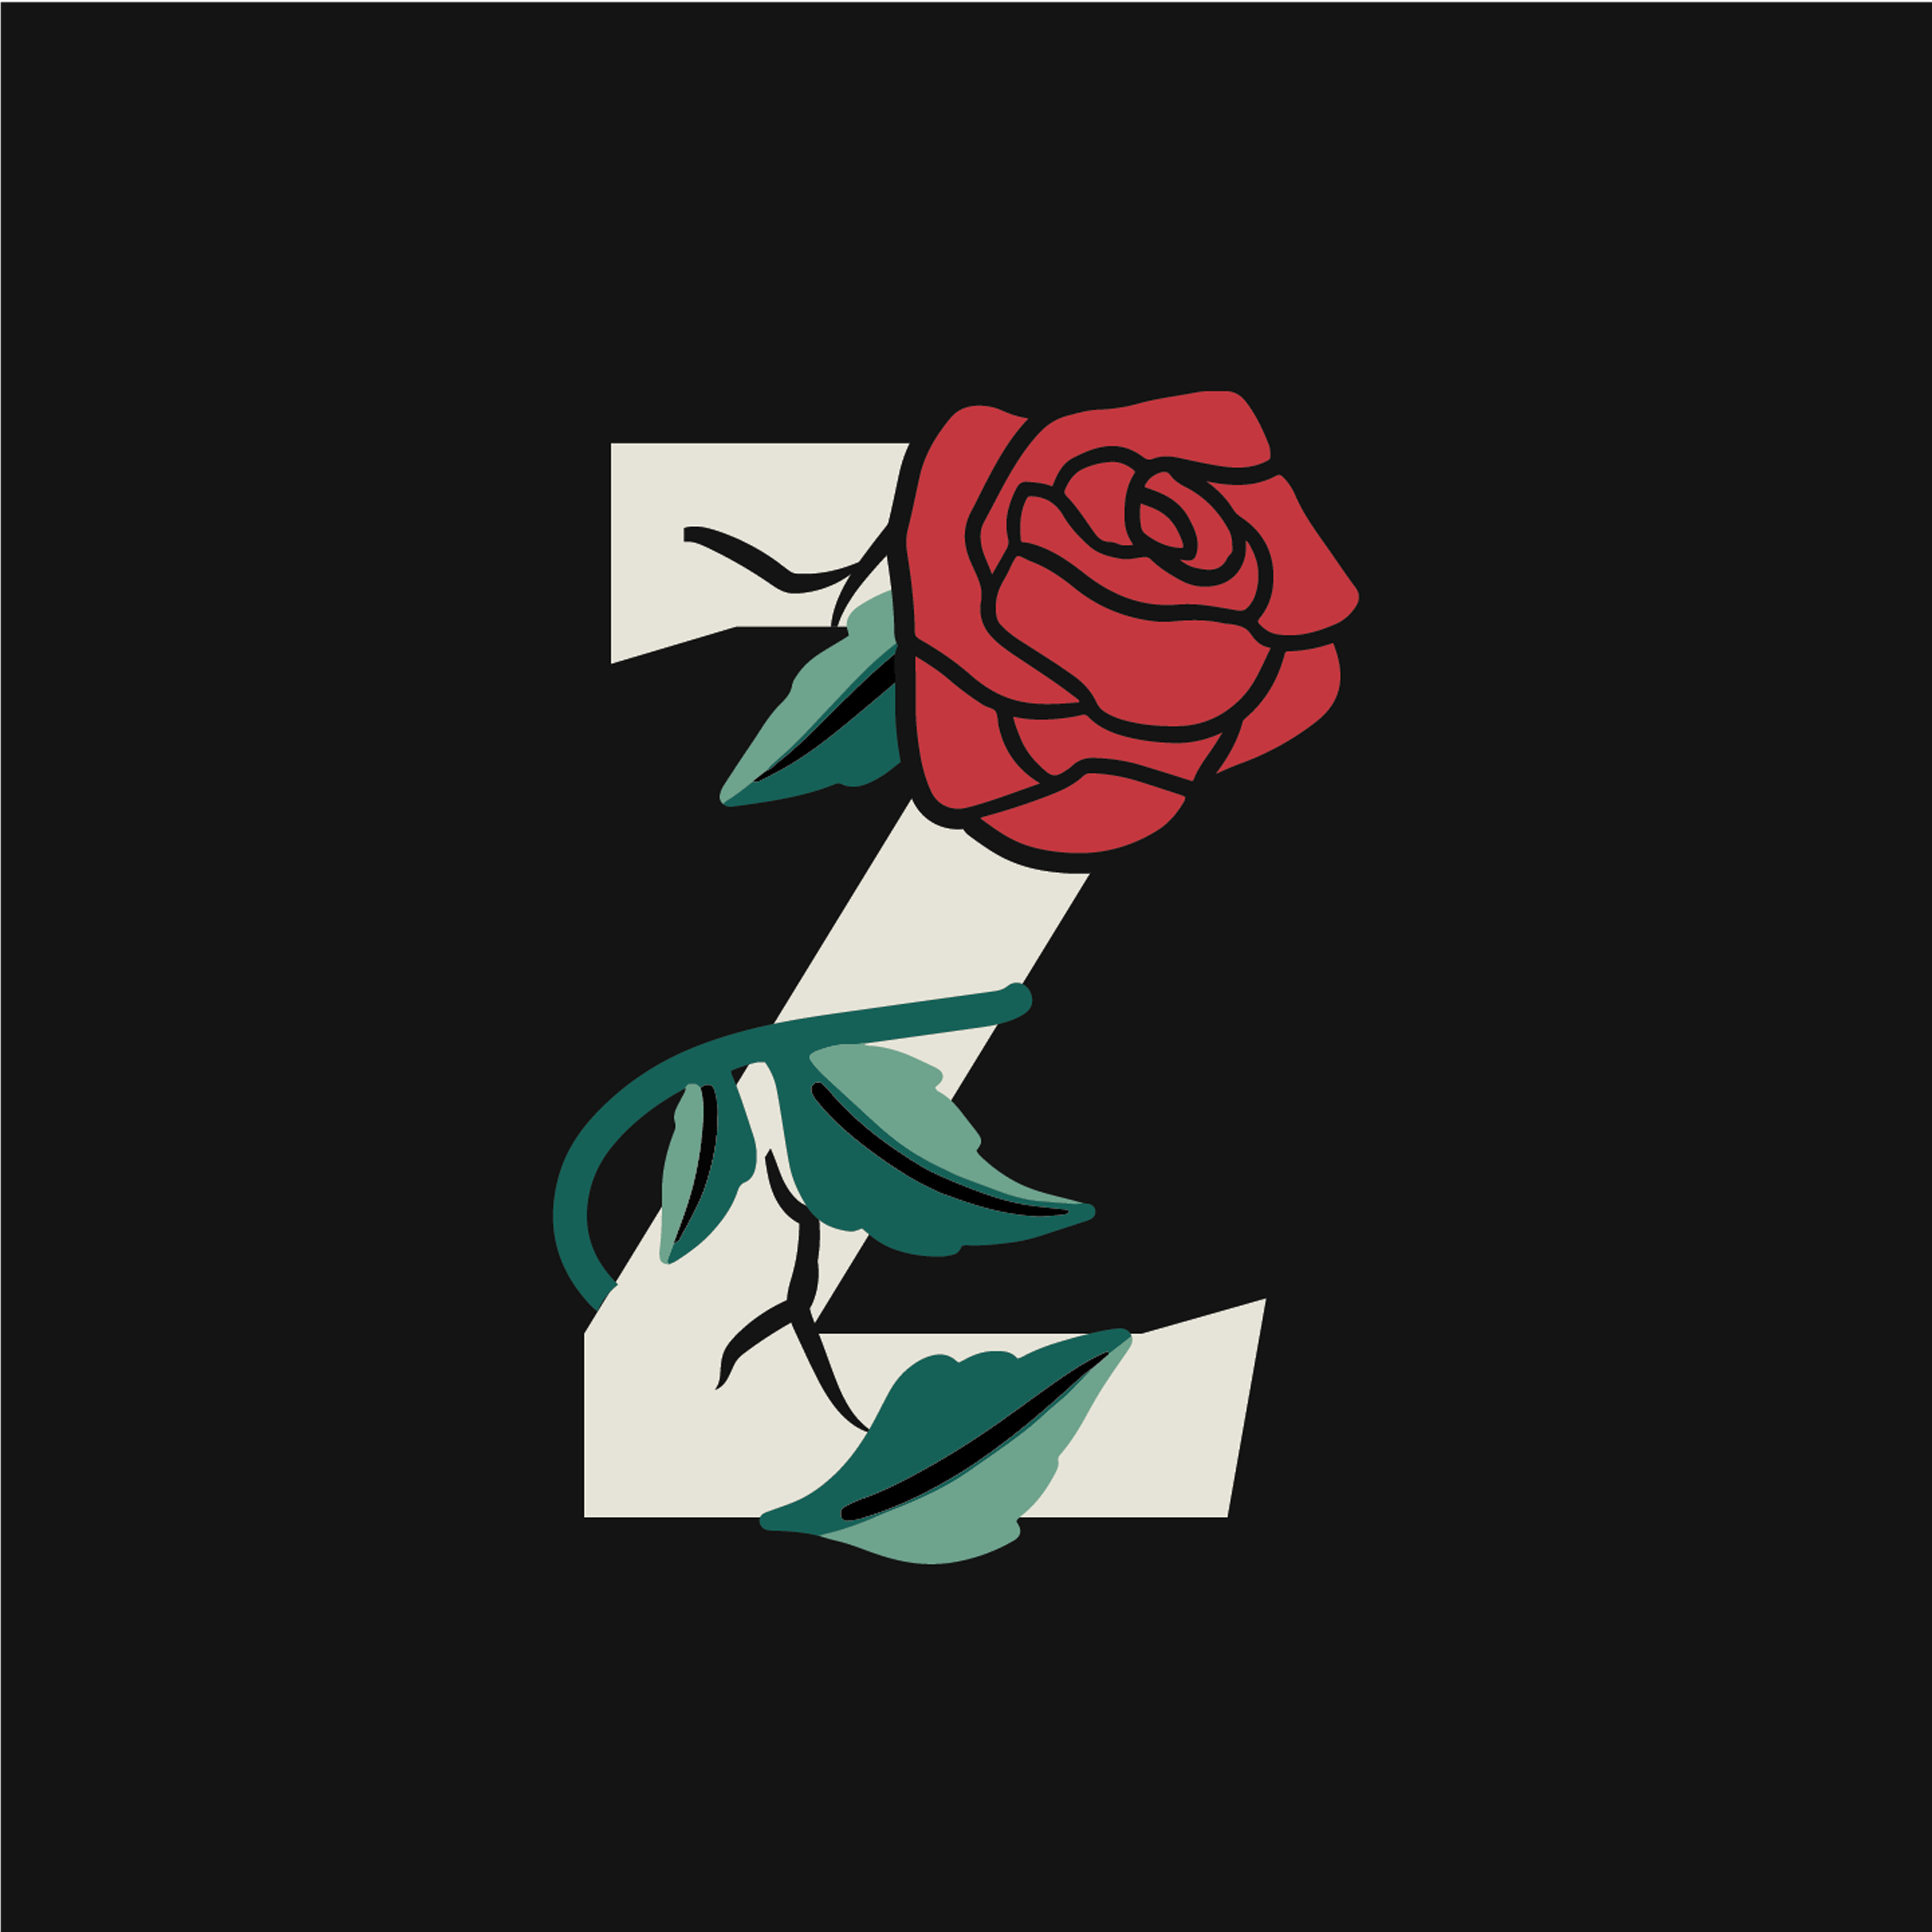 rose-letter-z-design-theme